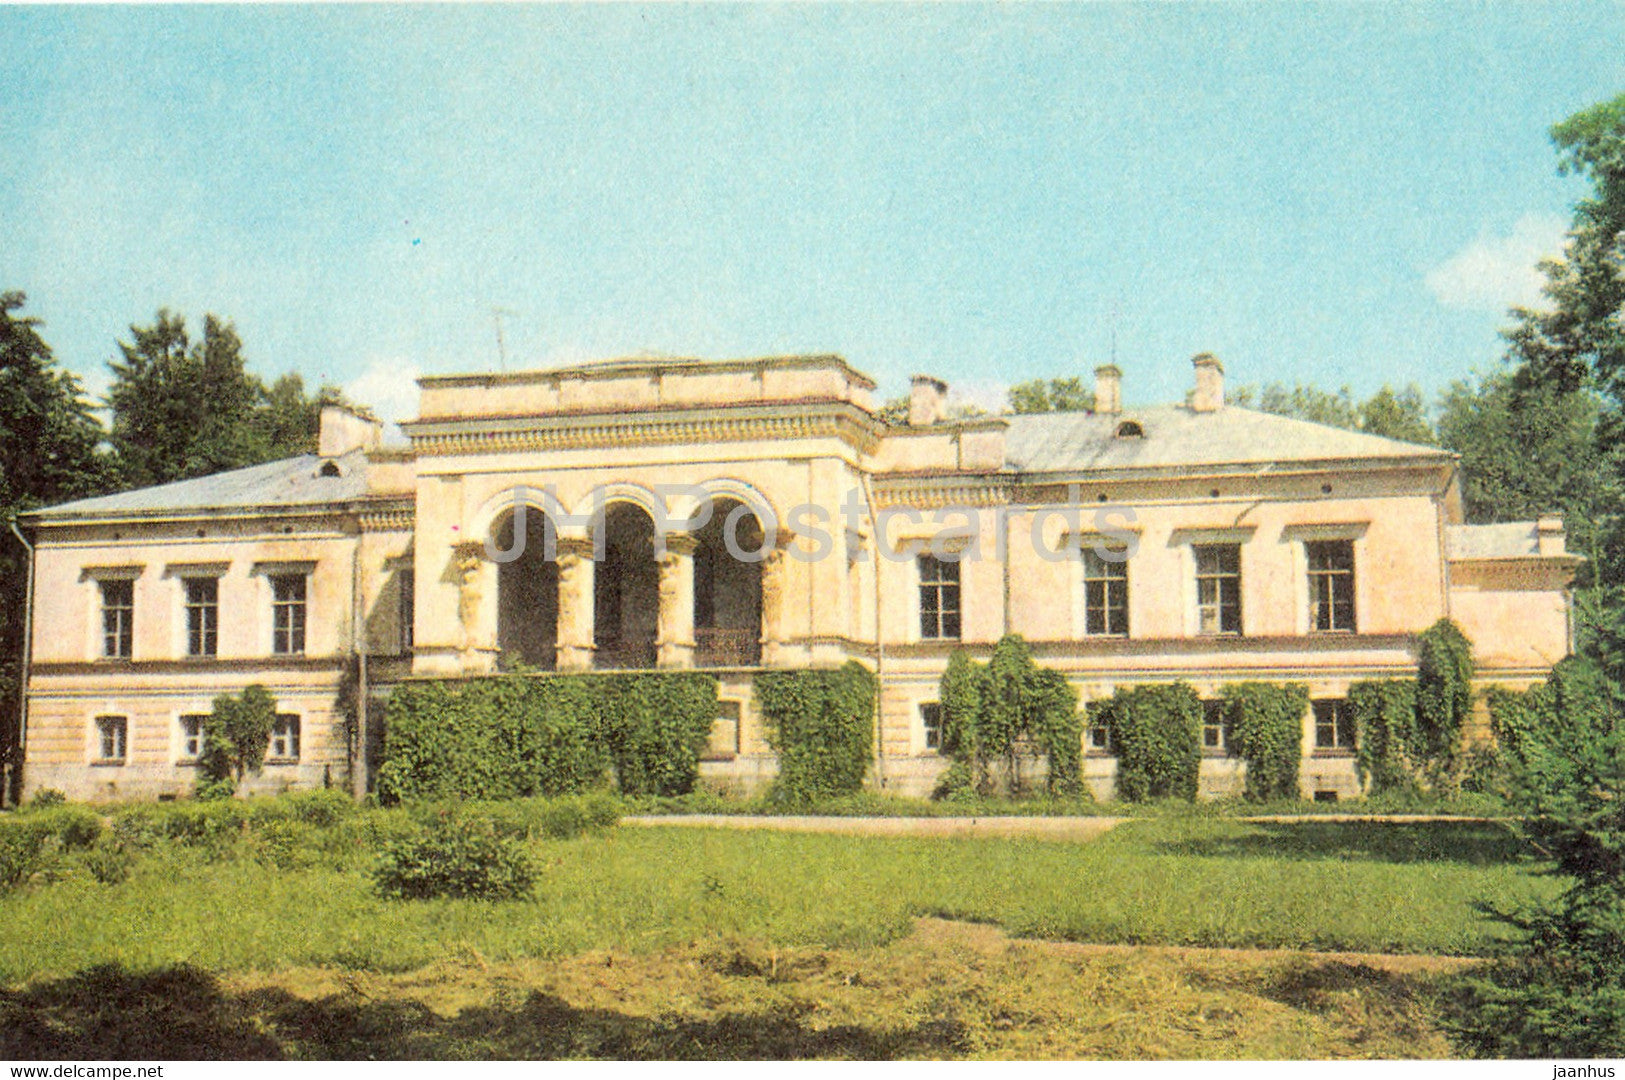 The former manor of Muuga - school - 1975 - Estonia USSR - unused - JH Postcards